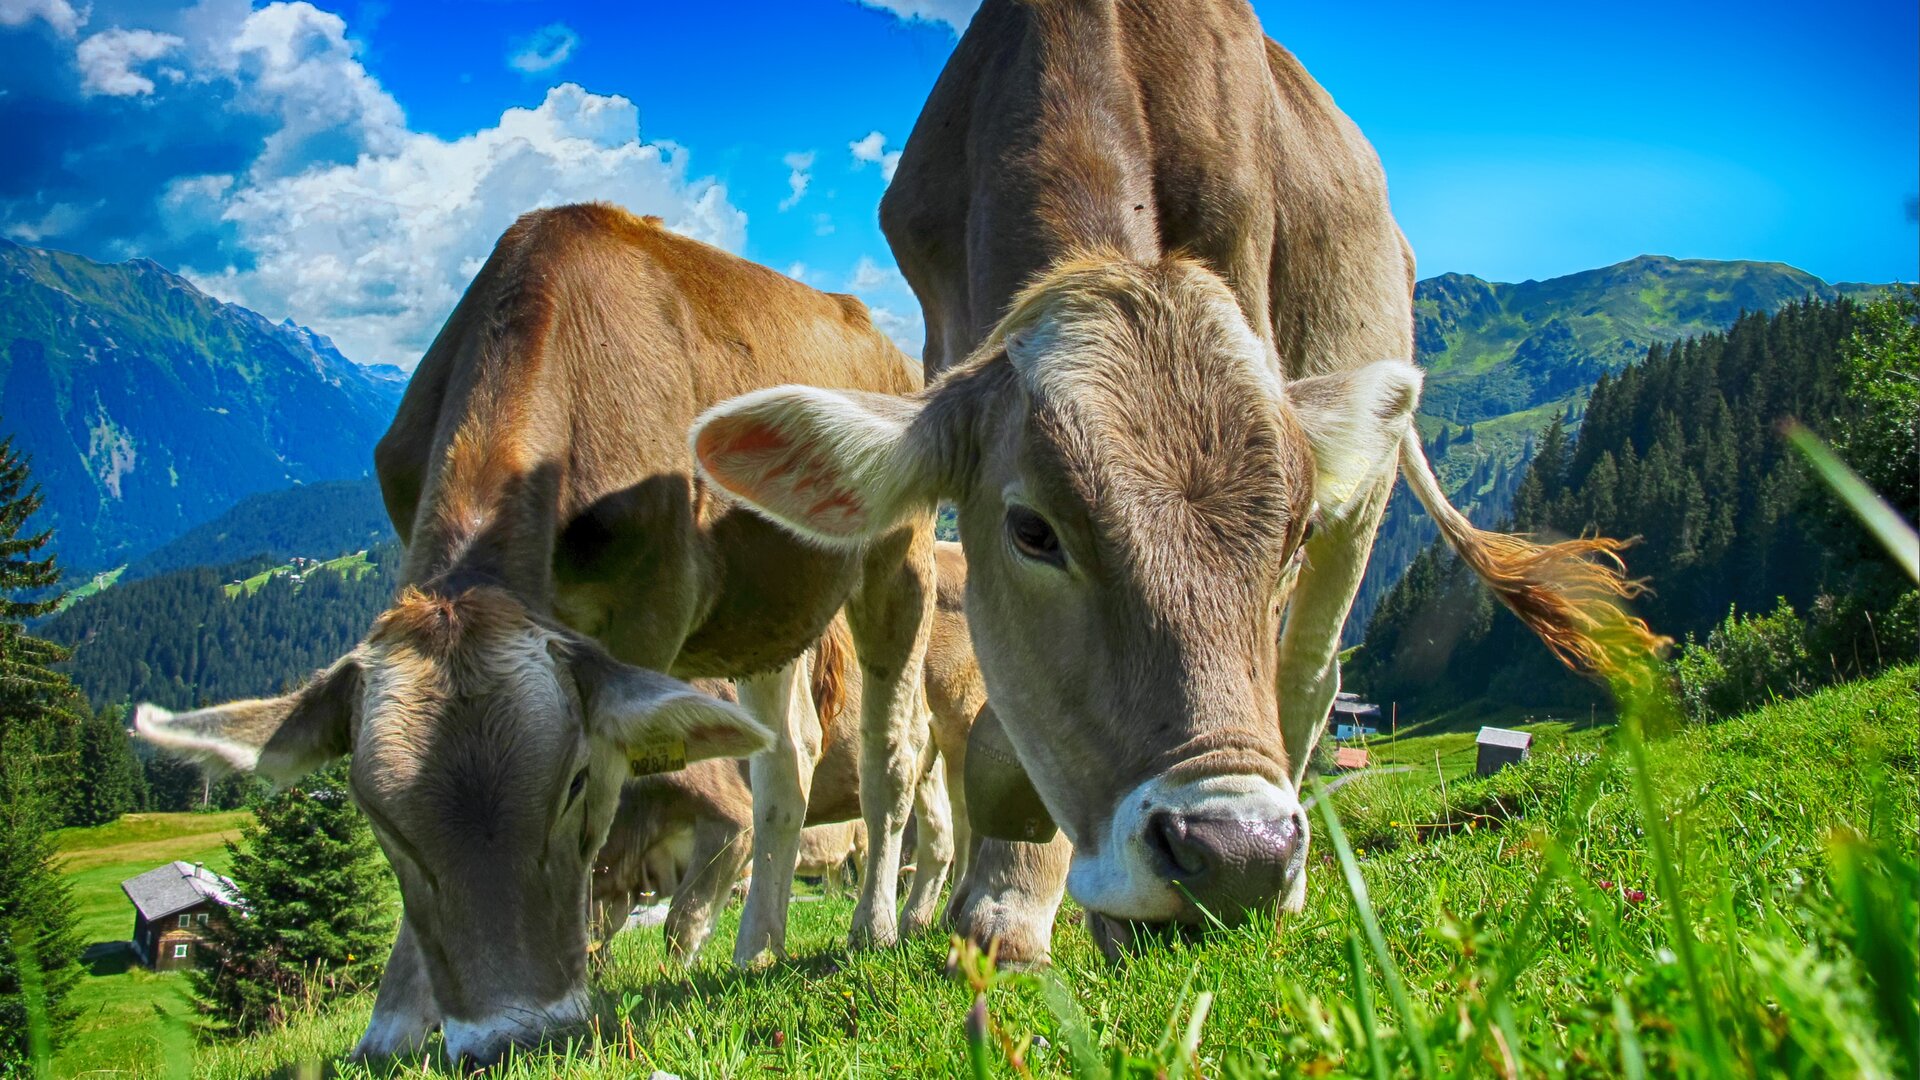 Ilustracja przedstawia trzy krowy – dwie znajdujące się na pierwszym planie i jedną stojącą za nimi. Krowy mają jasnobrązowy kolor sierści. Krowy pasą się na zielonej łące, znajdującej się na wzniesieniu. Za nimi rozpościera się malowniczy widok na góry. Jest piękny, słoneczny dzień.